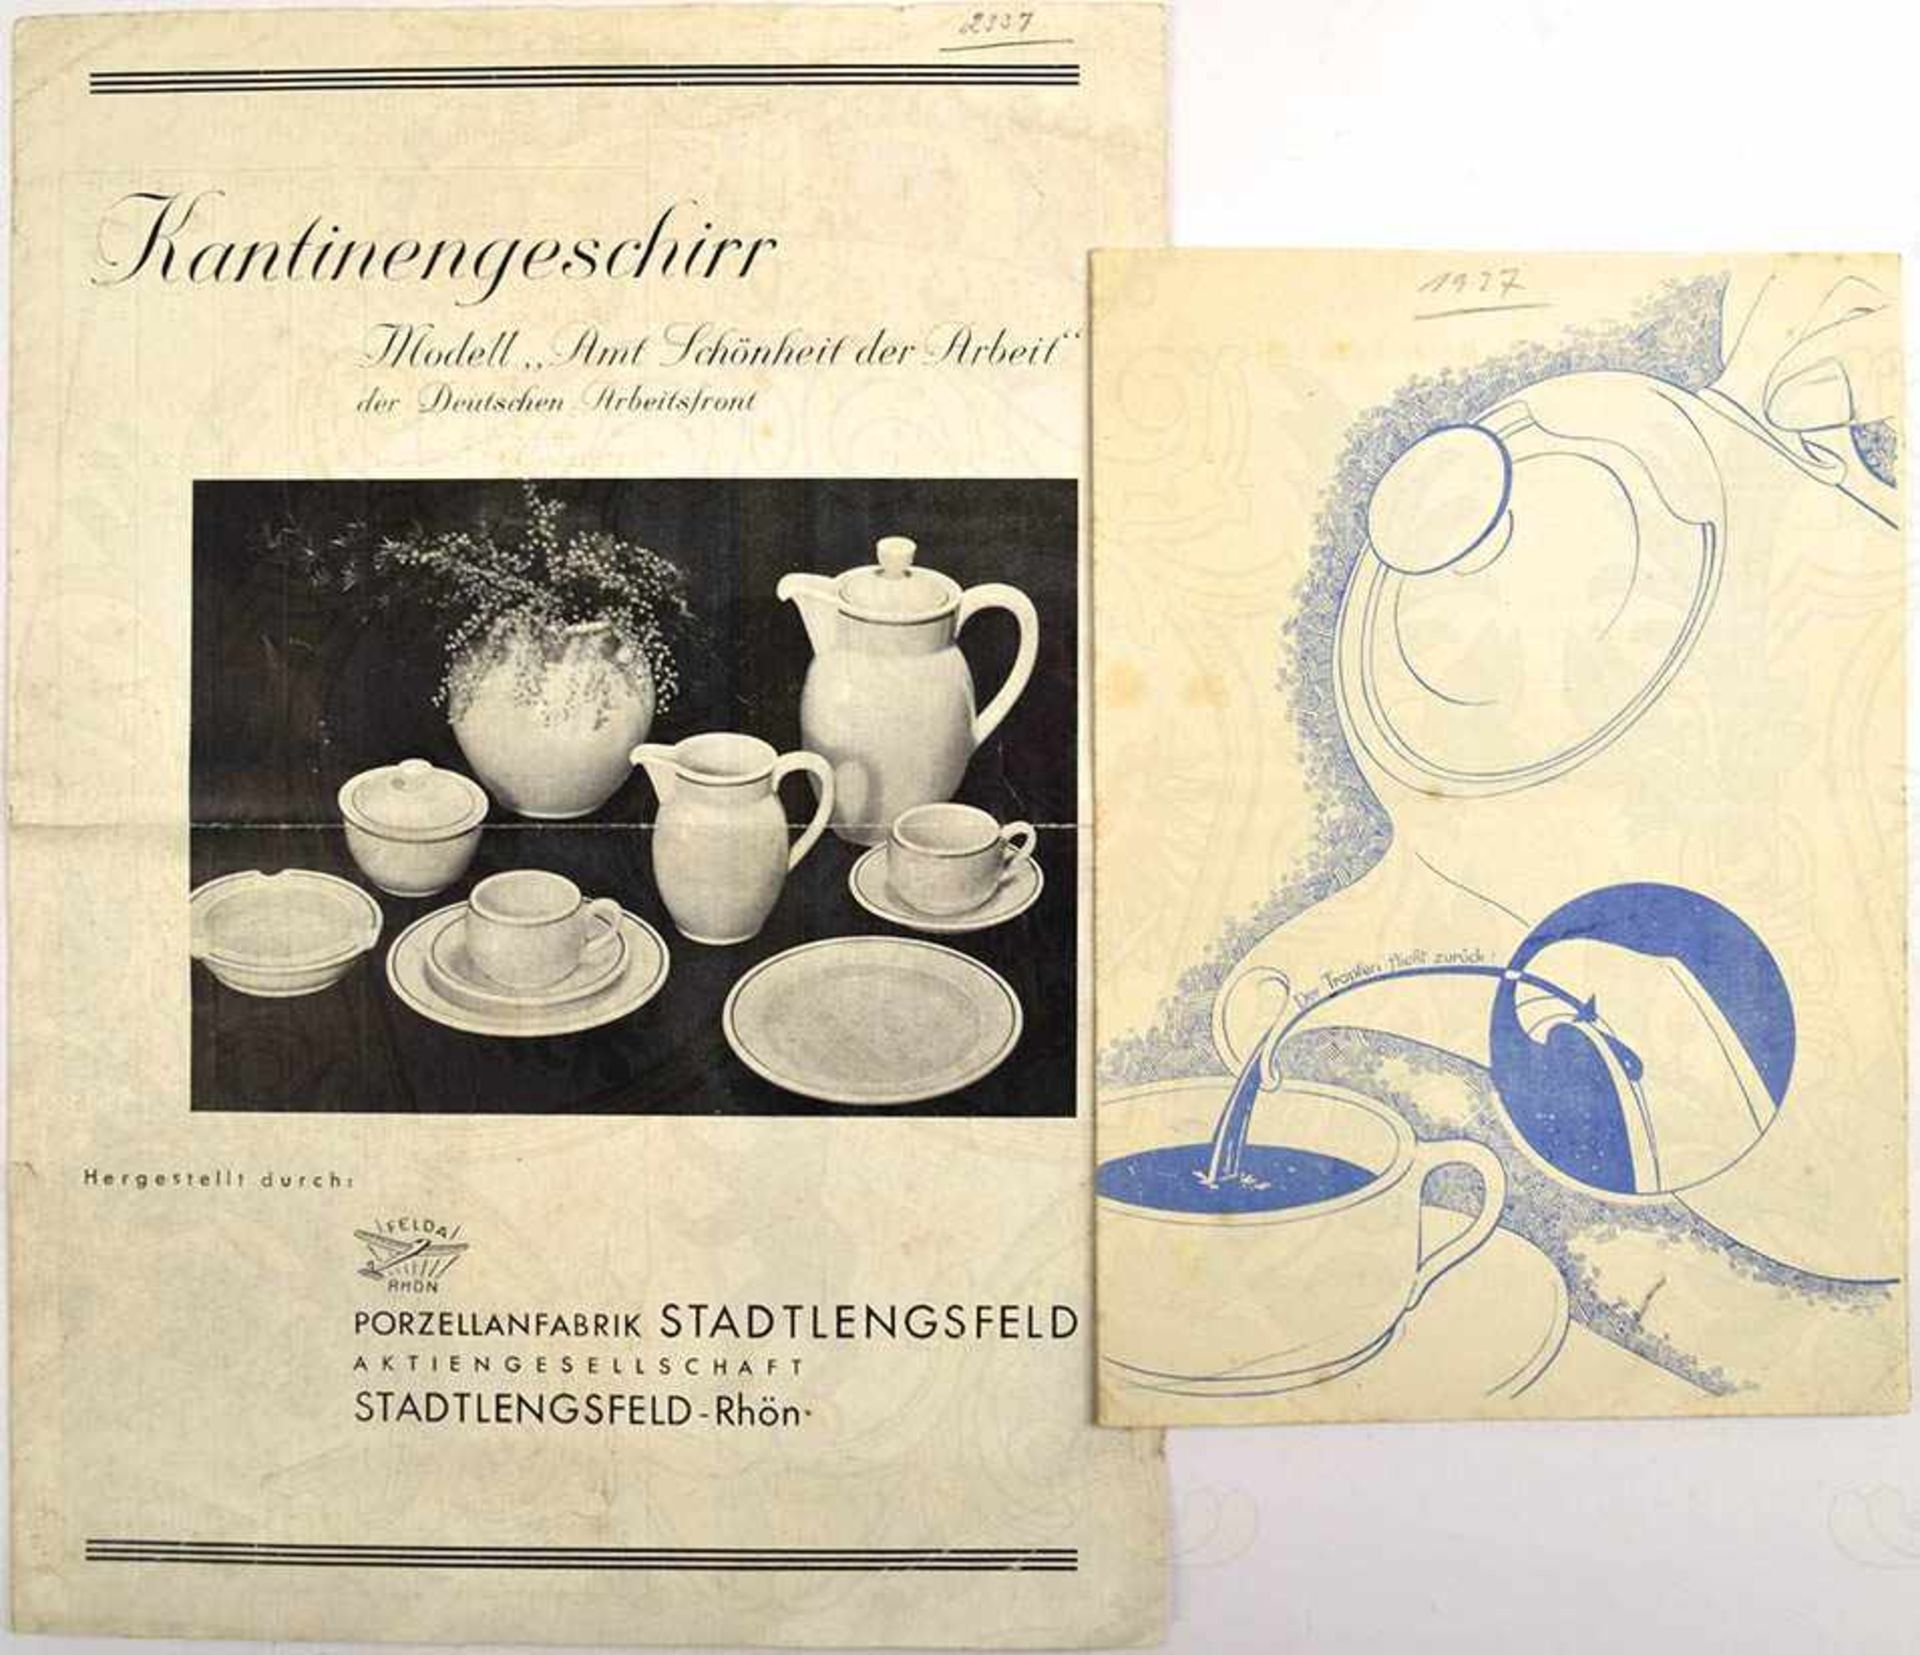 2 PREISLISTEN FÜR PORZELLANGESCHIRR, Porzellanfabrik Stadtlengsfeld/Rhön, 30er Jahre, jew. 4 S., A